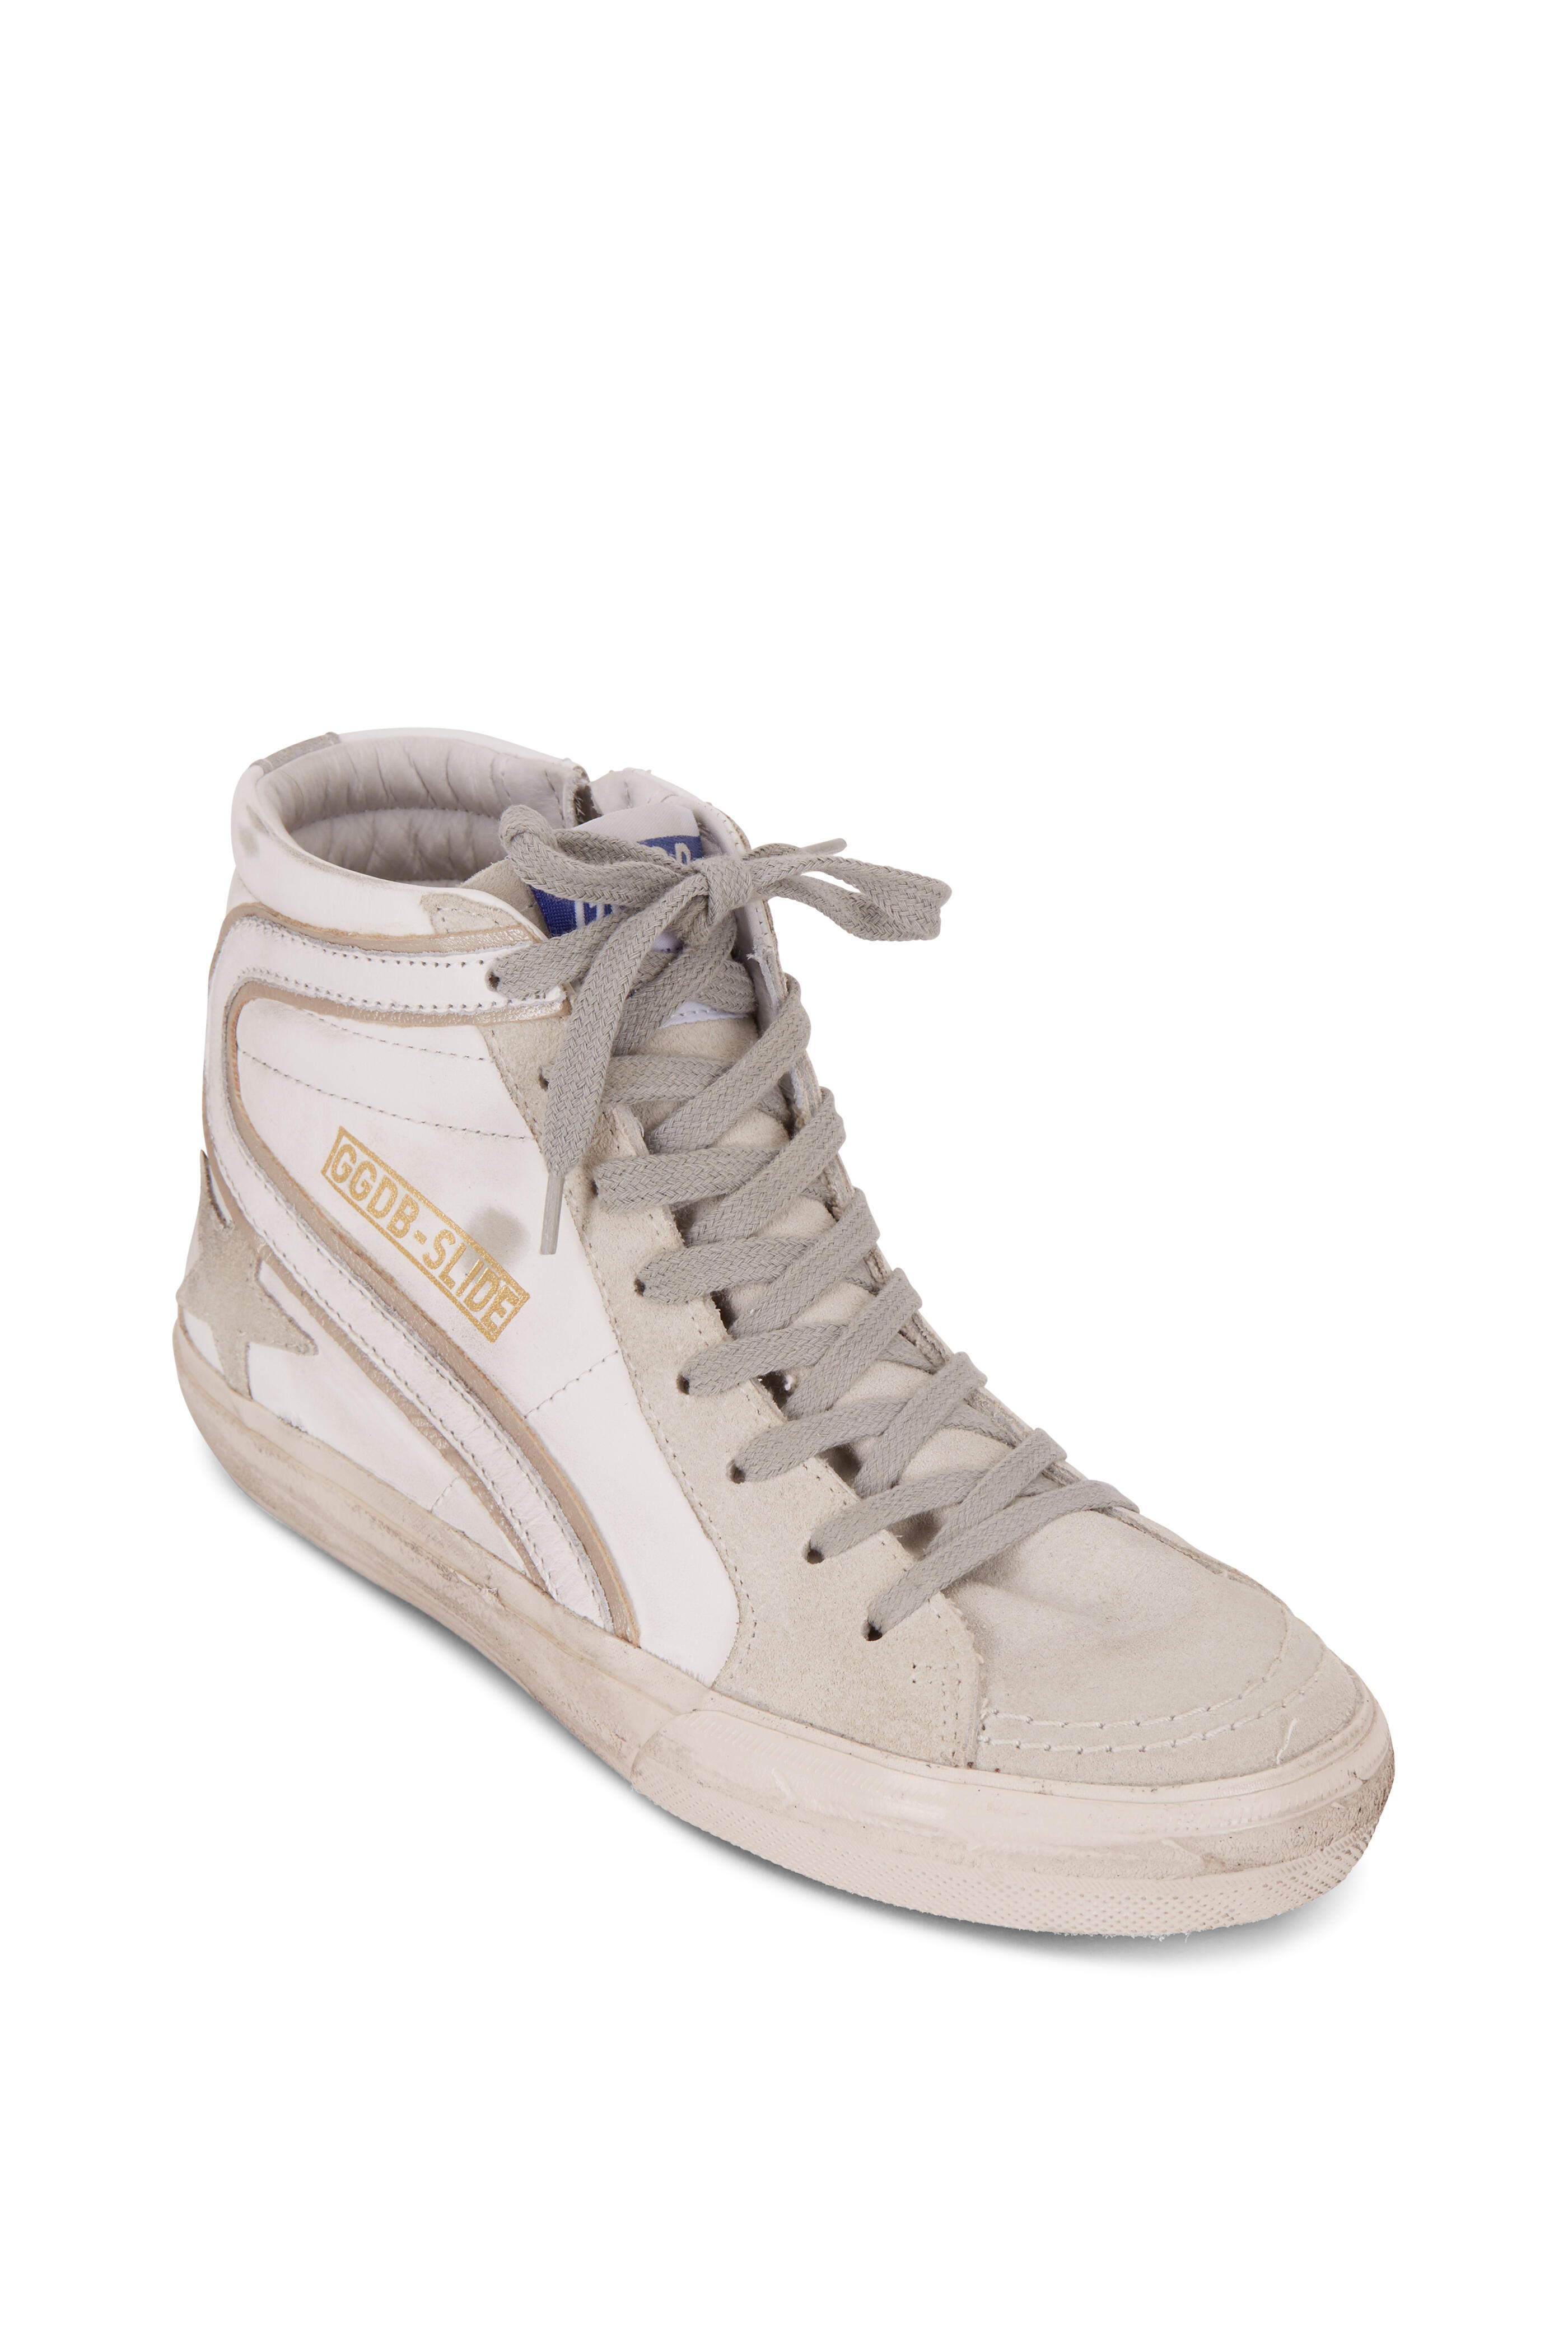 Golden Goose - Slide White & Gray Leather High Top Sneaker